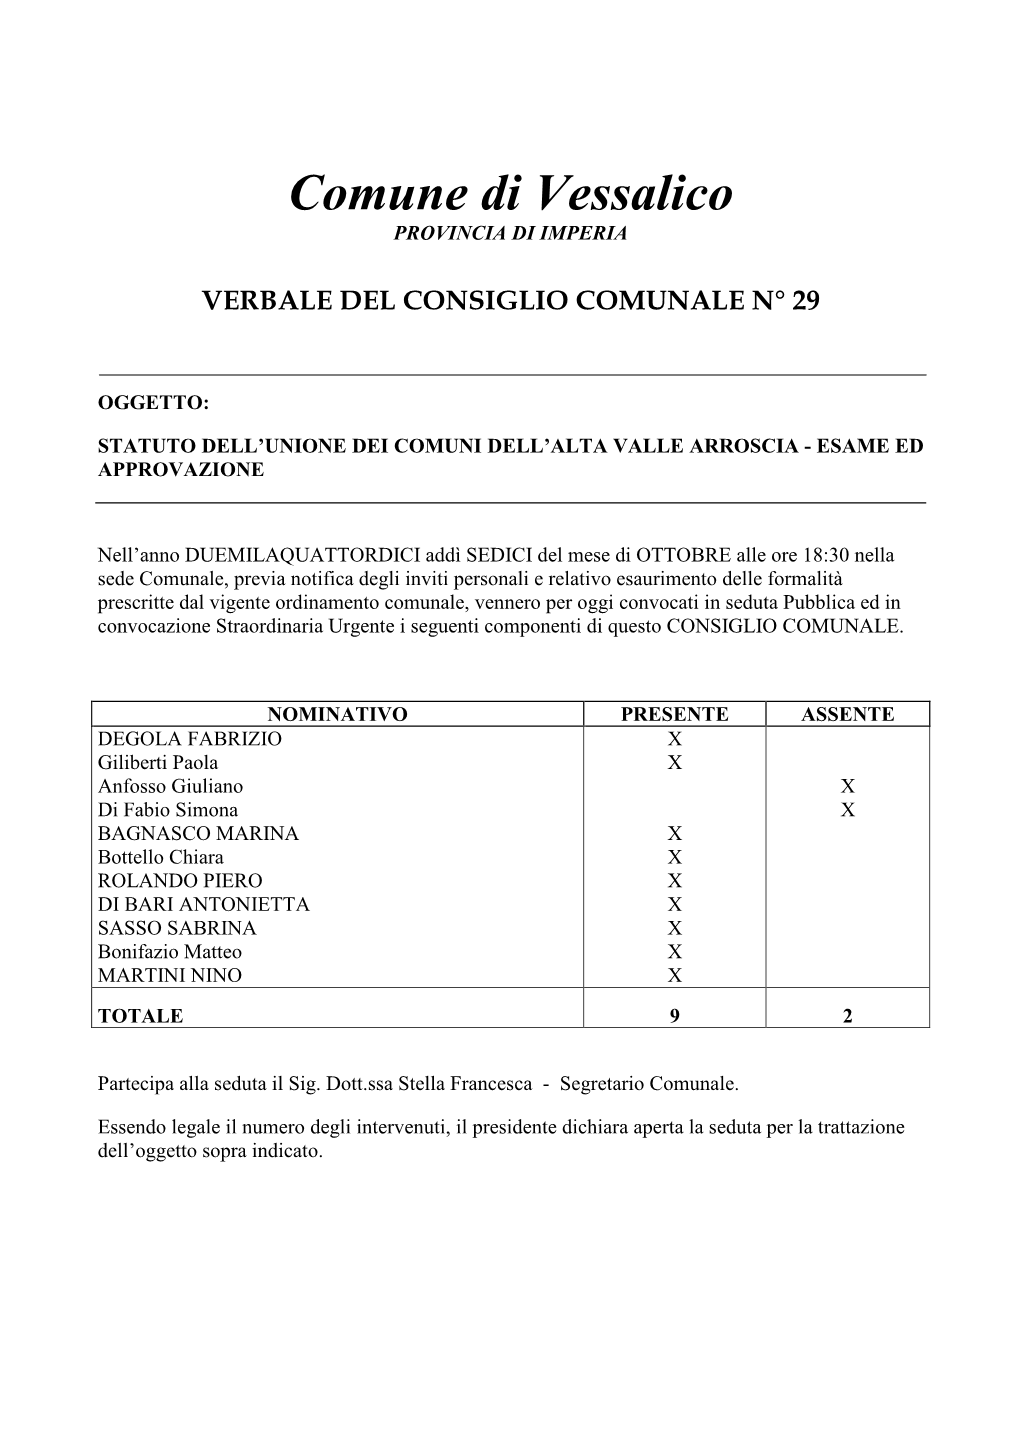 Delibera C.C. 29-2014 Statuto Unione Dei Comuni